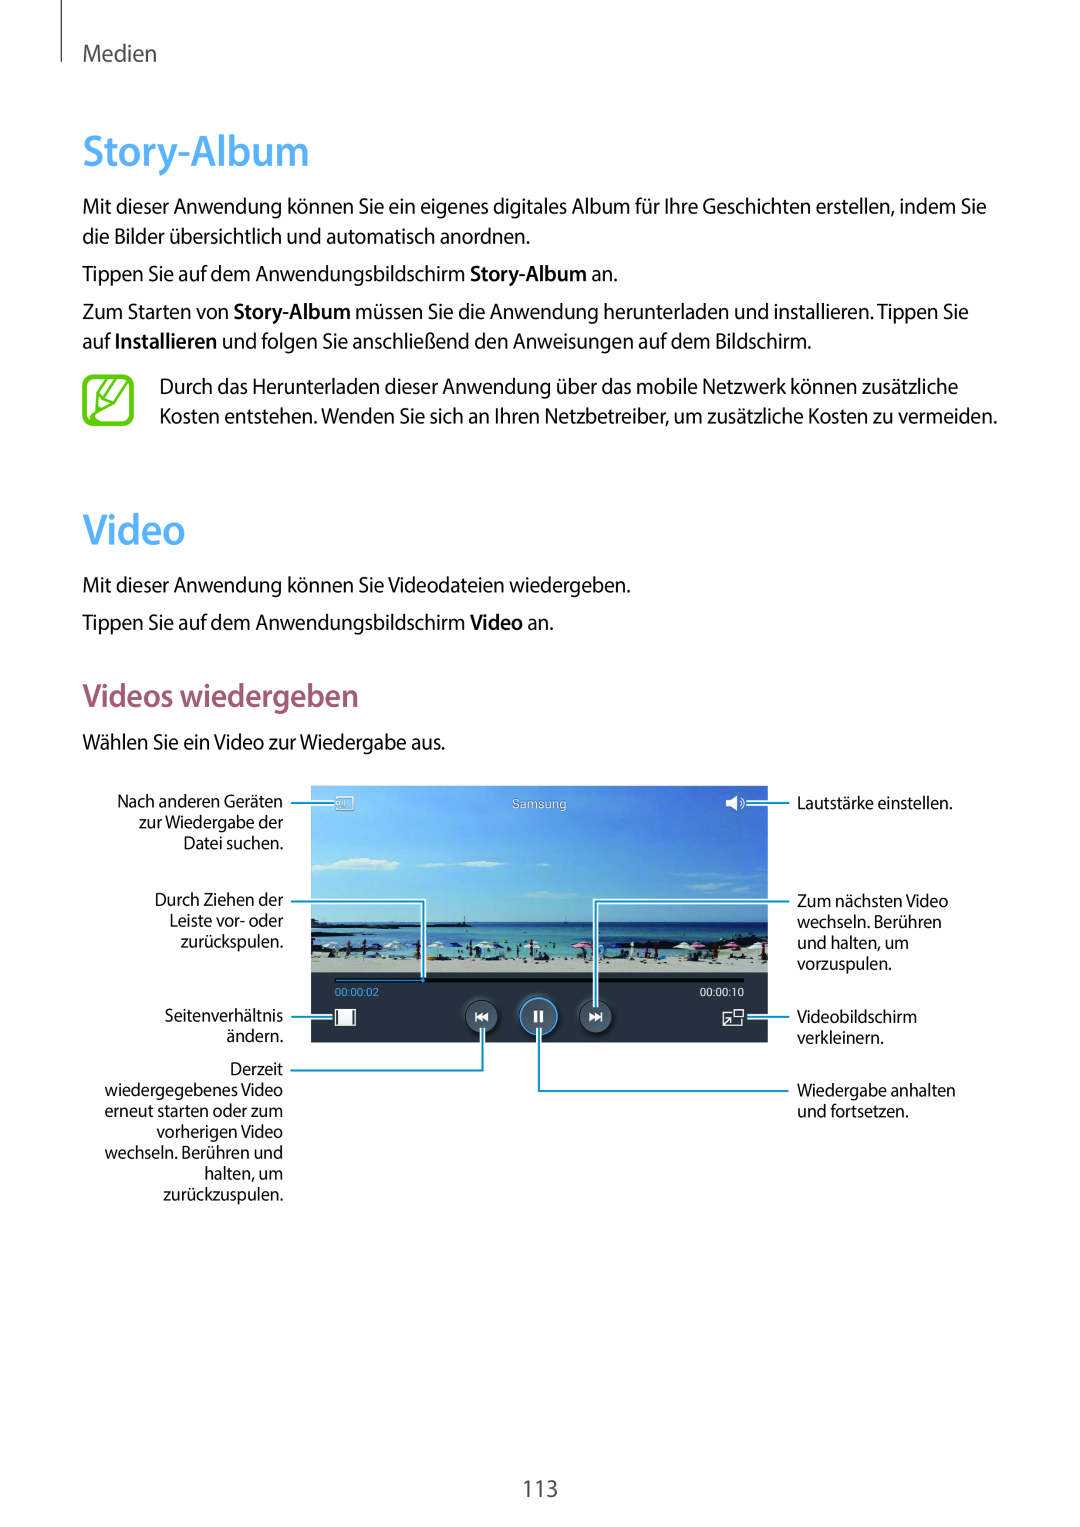 Samsung SM-C1010ZKATUR manual Videos wiedergeben, Medien, Tippen Sie auf dem Anwendungsbildschirm Story-Album an 